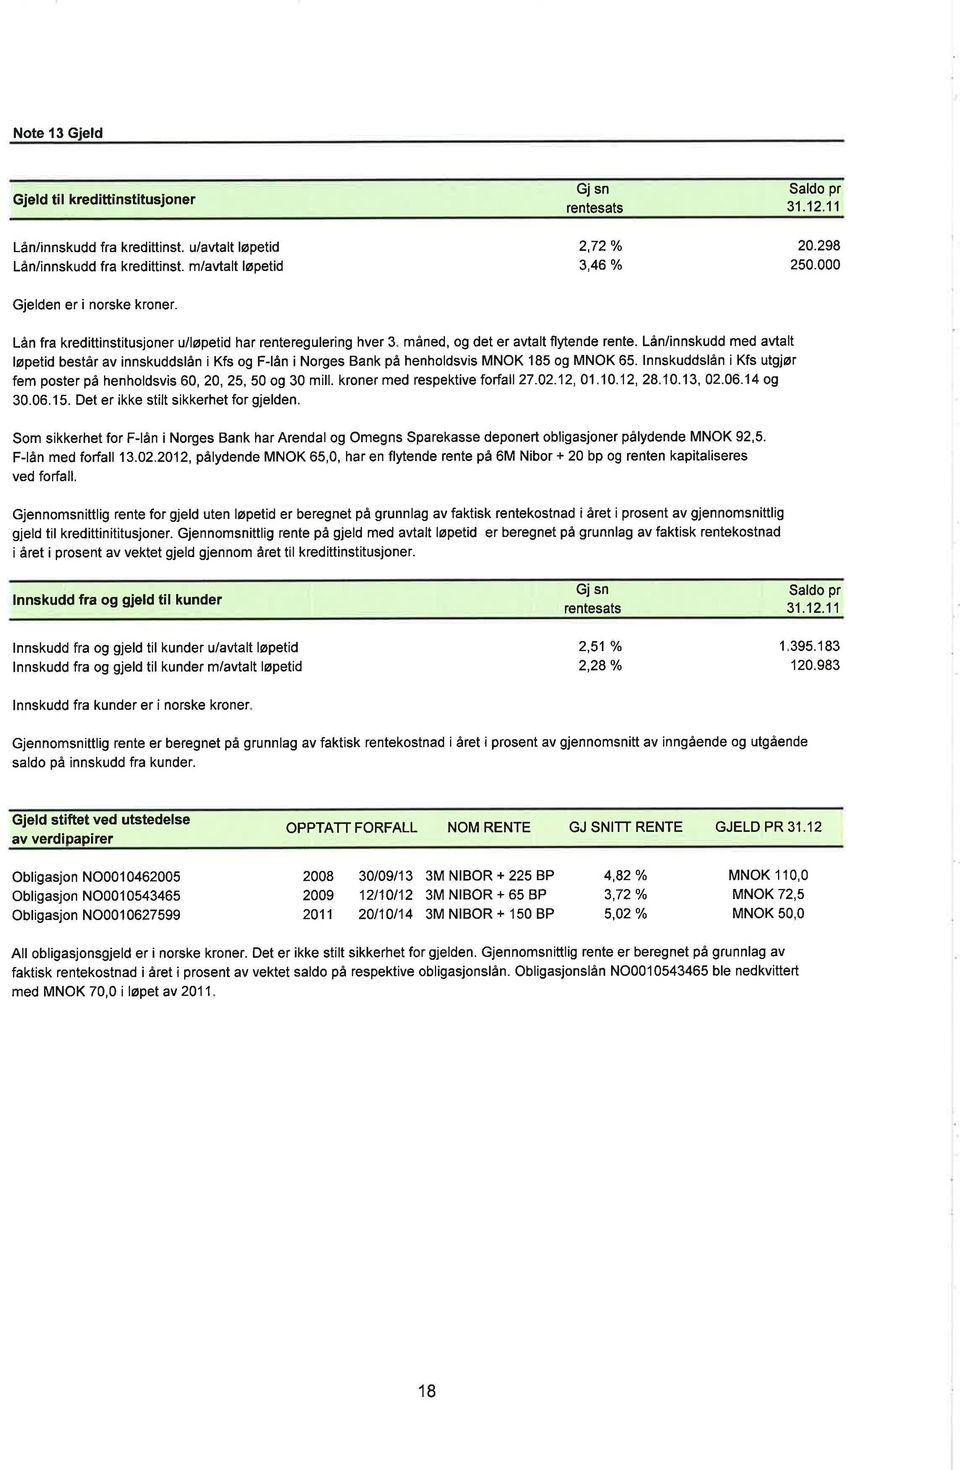 Lån/innskudd med avtalt løpetid består av innskuddslån i Kfs og F-lån i Norges Bank på henholdsvis MNOK 185 og MNOK 65. lnnskuddslån i Kfs utgjør fem poster på henholdsvis 6,2,25,5 og 3 mill.